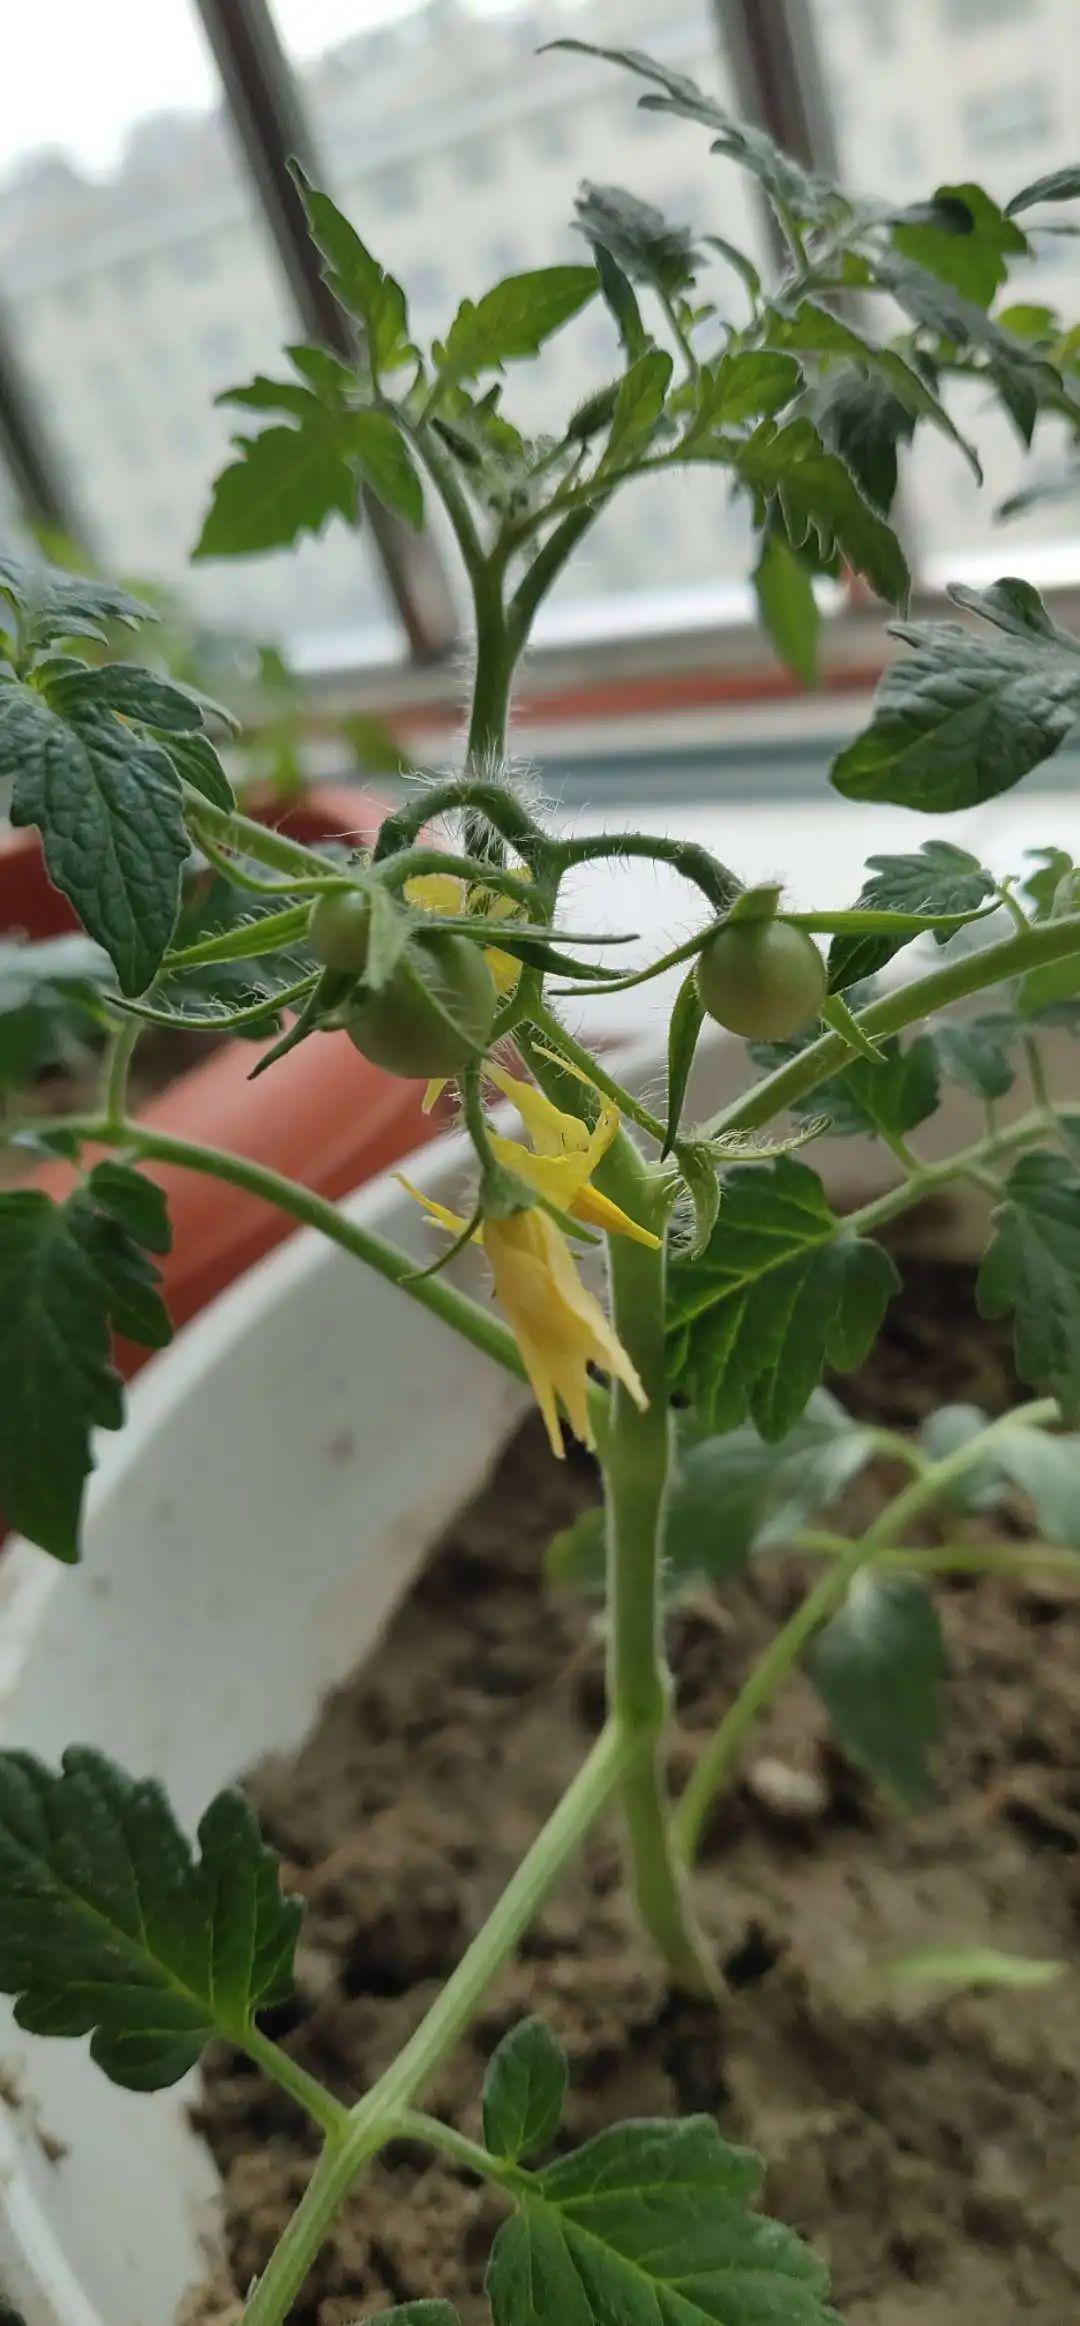 番茄浇水,观察,记录一分耕耘一分收获春光中的番茄小苗在长大阳光下的